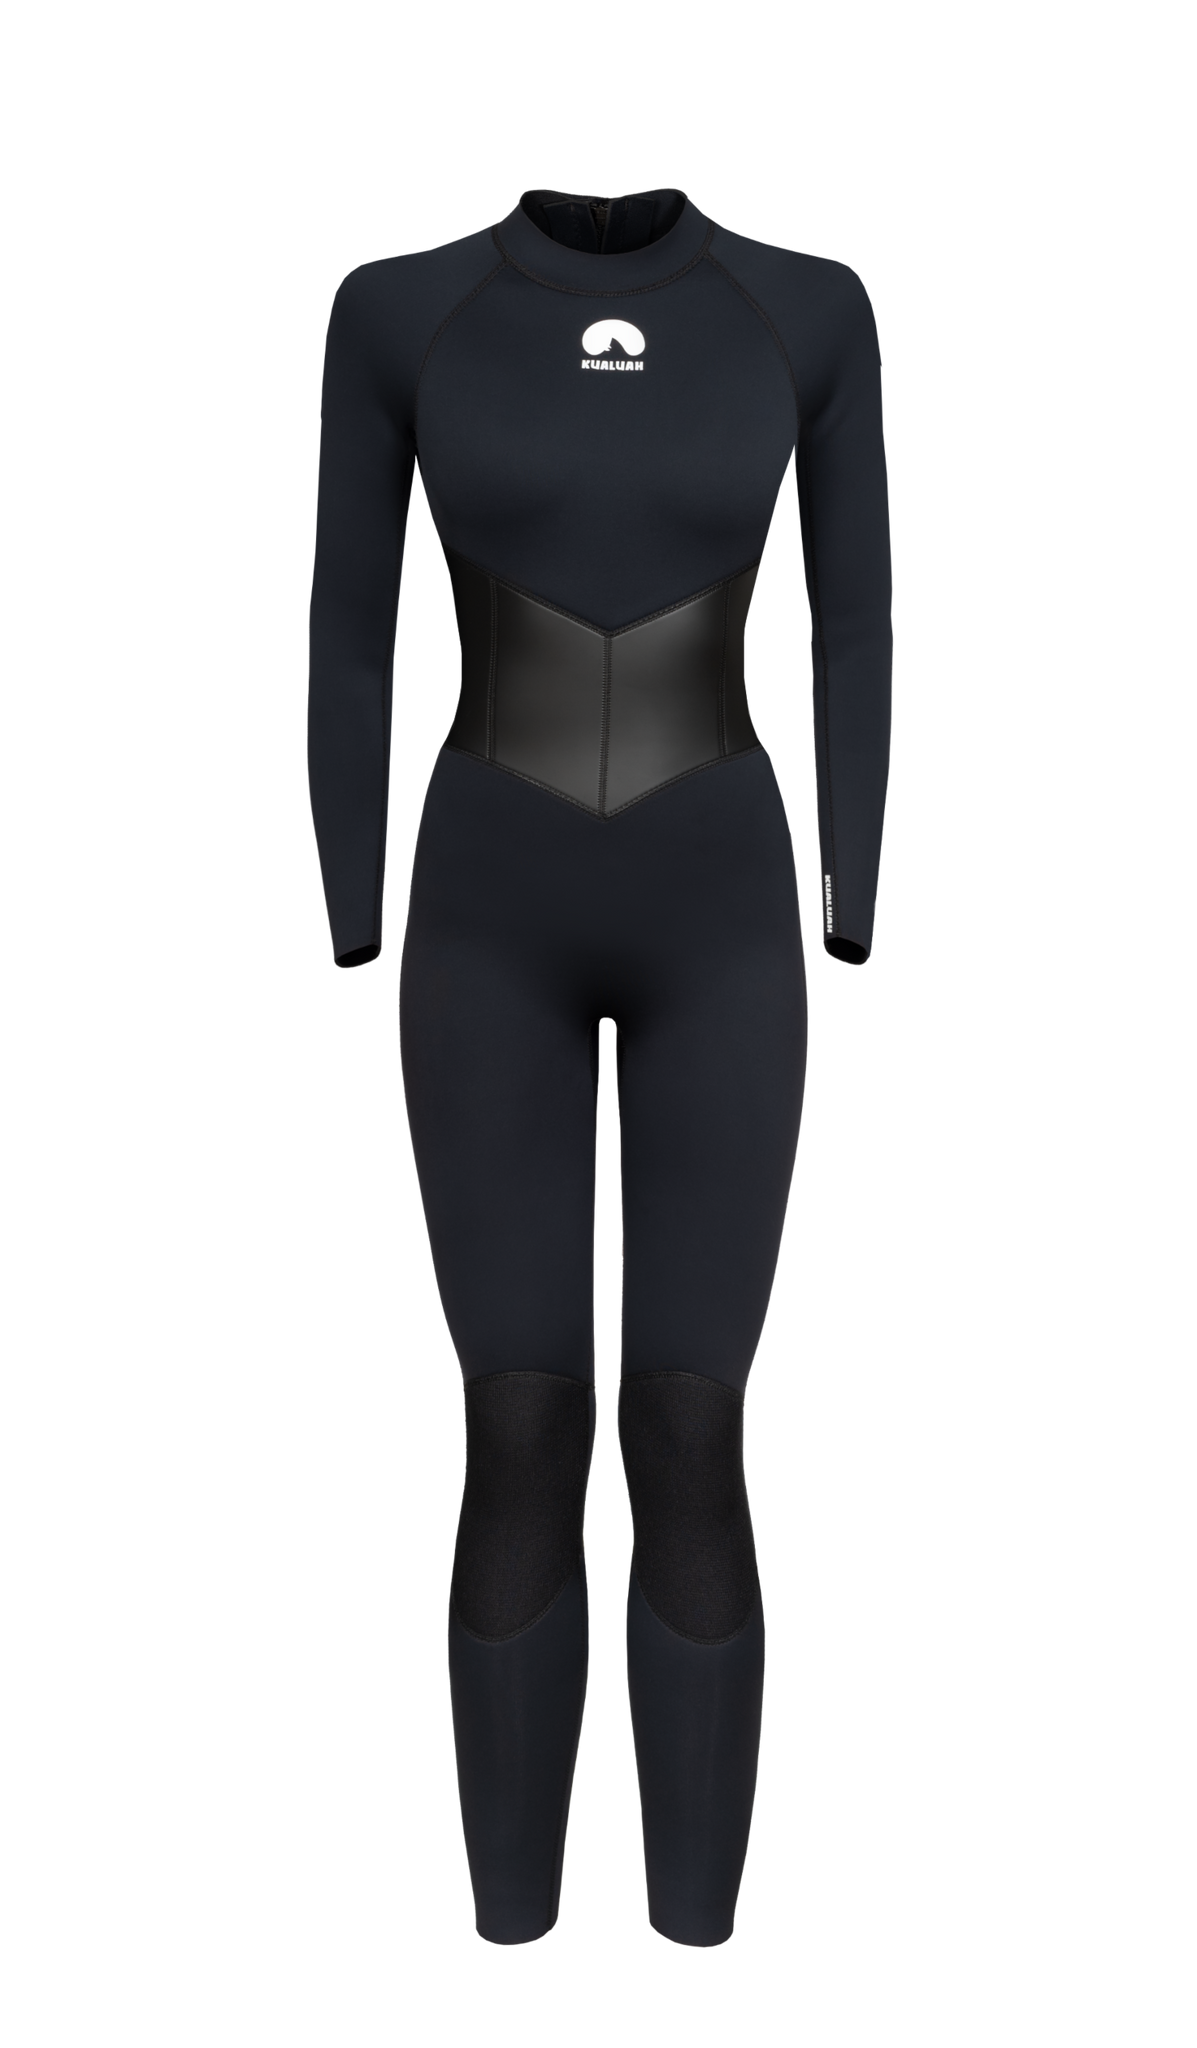 Aria wetsuit - 2mm